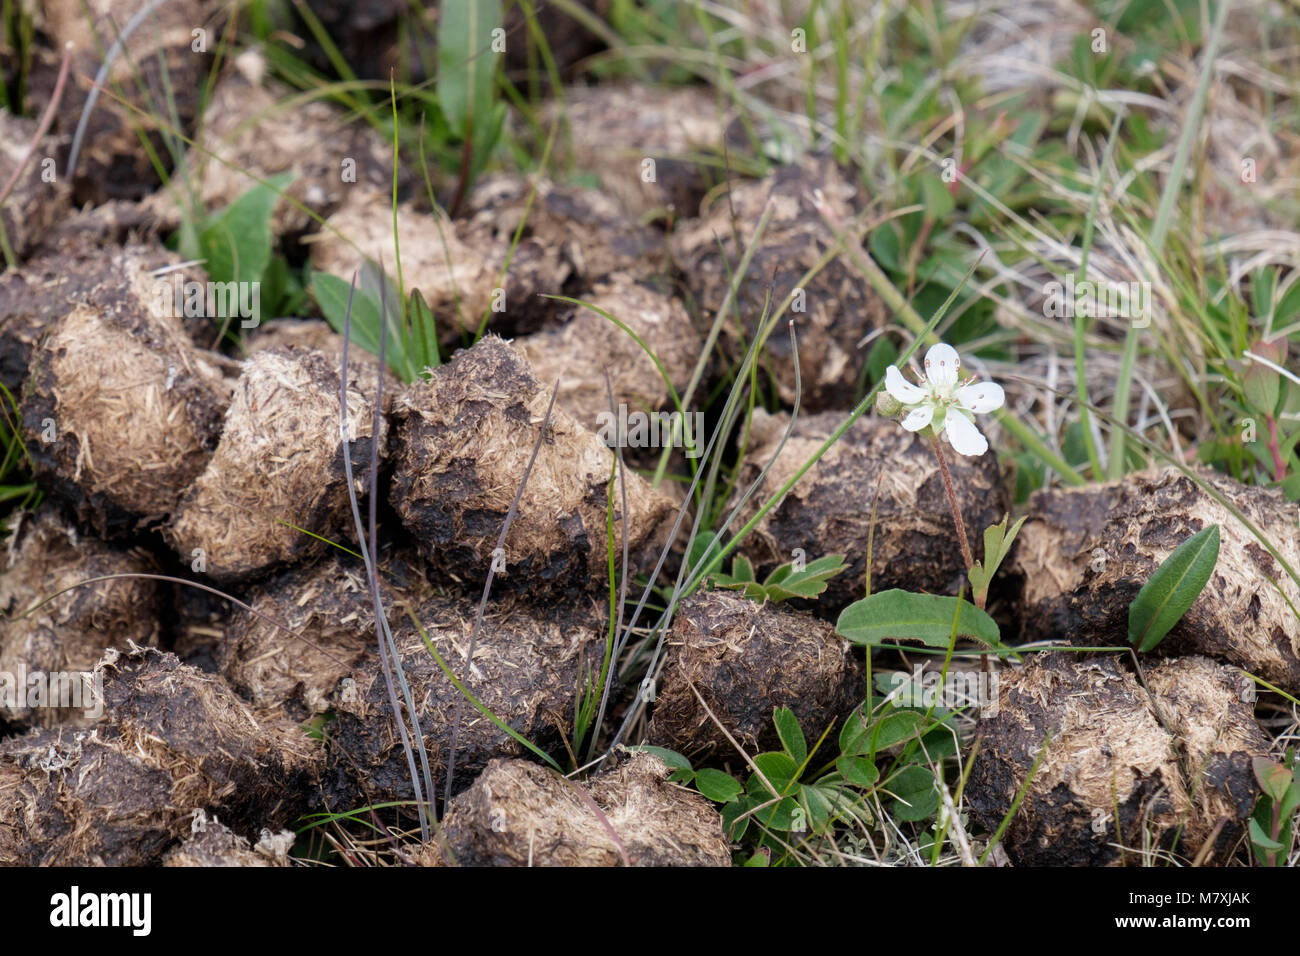 Drei gezahnten Cinquefoil (Sibbaldia tridentata) oder Tretands-Potentil wachsen in nährstoffreichen Moschusochse poo Kot. Qaqortoq, Kujalleq, Grönland Stockfoto